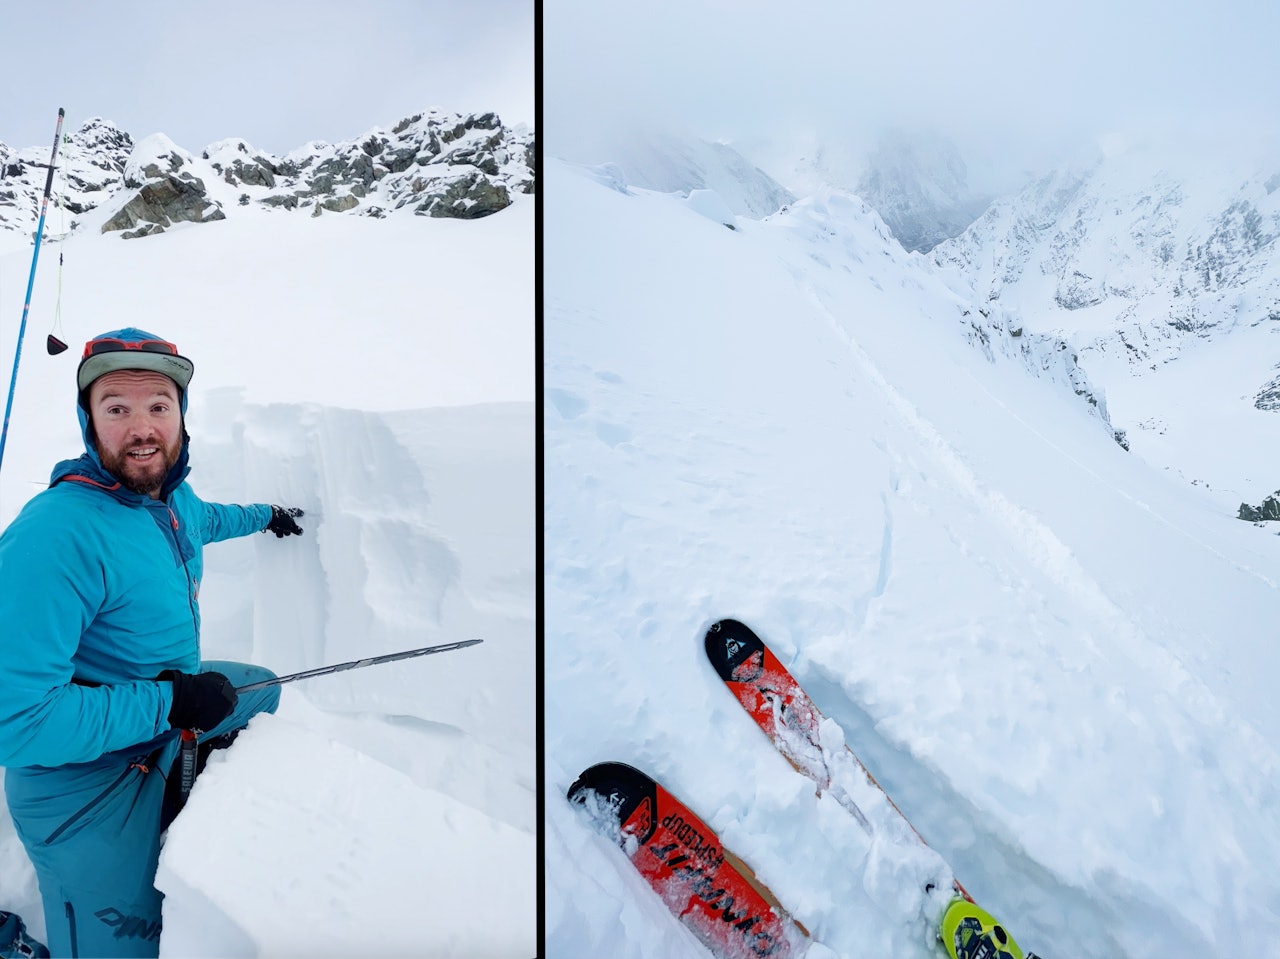 STABILT? Fjellguide Finn Hovem tester stabiliteten i snøen på Kjosentind i Lyngen. Bildet til høyre viser at det er dårlige bindinger i snødekket.